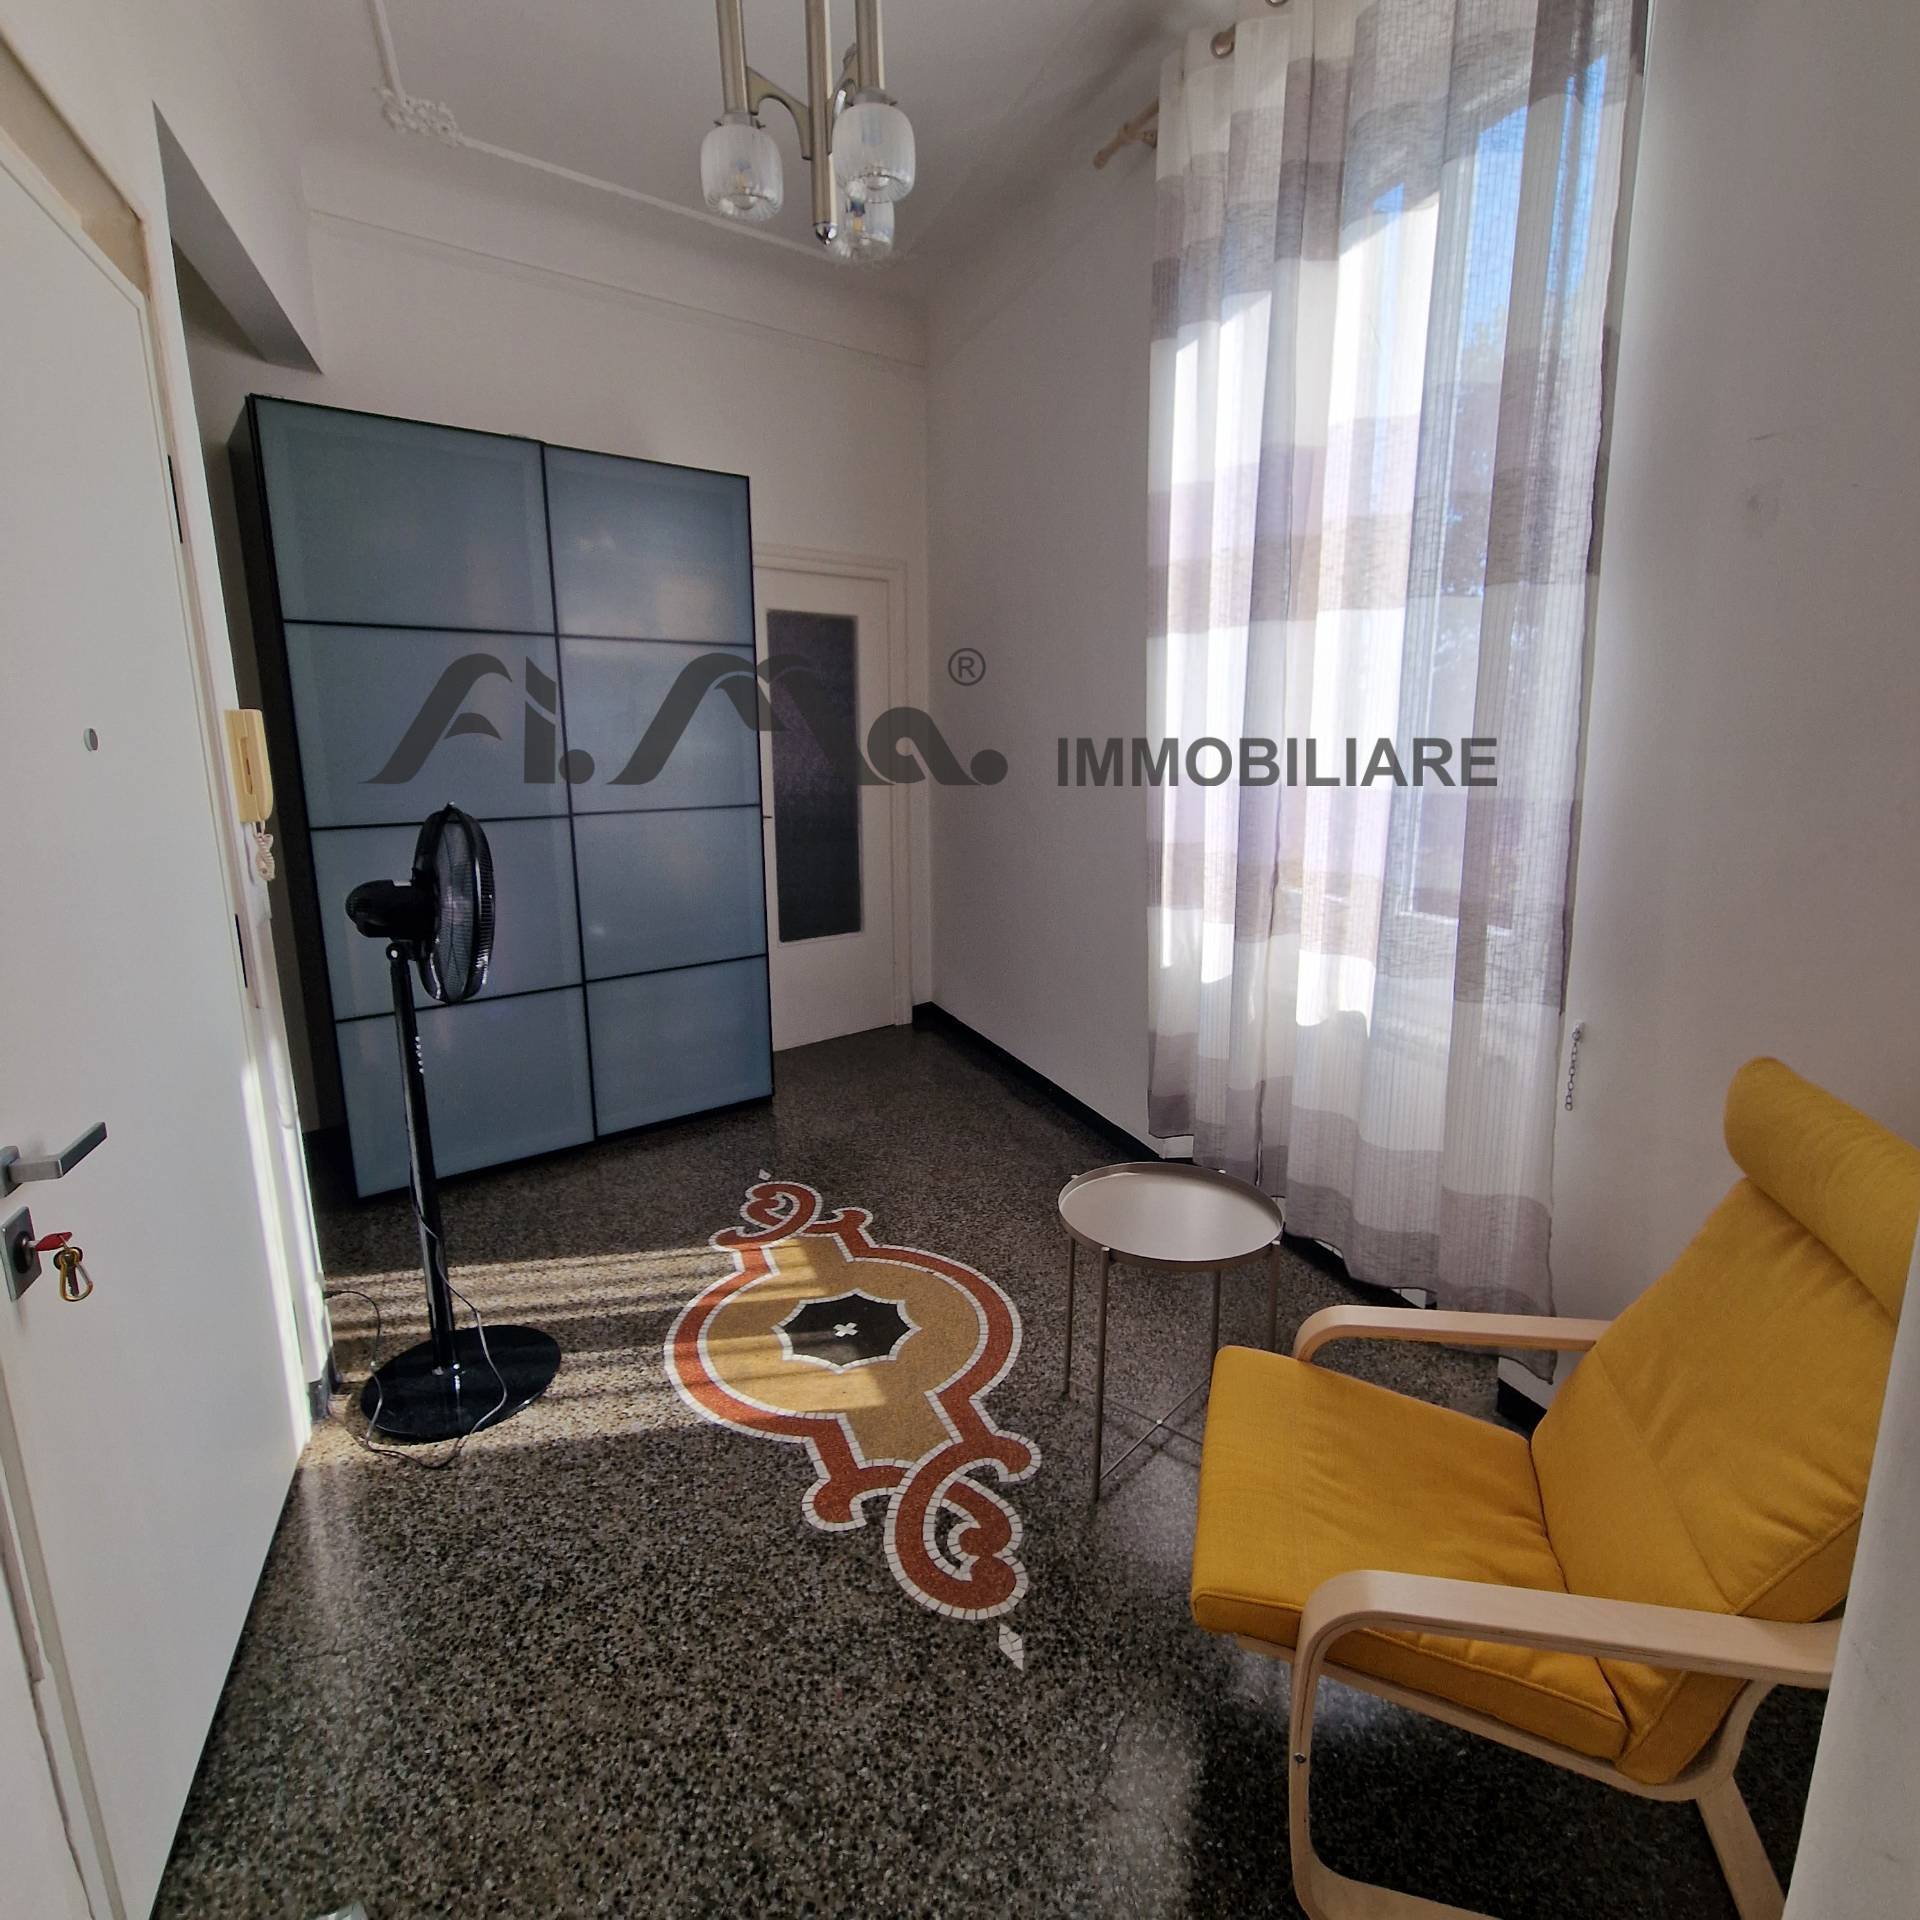 Appartamento in vendita a Savona, 3 locali, zona apiana, prezzo € 140.000 | PortaleAgenzieImmobiliari.it